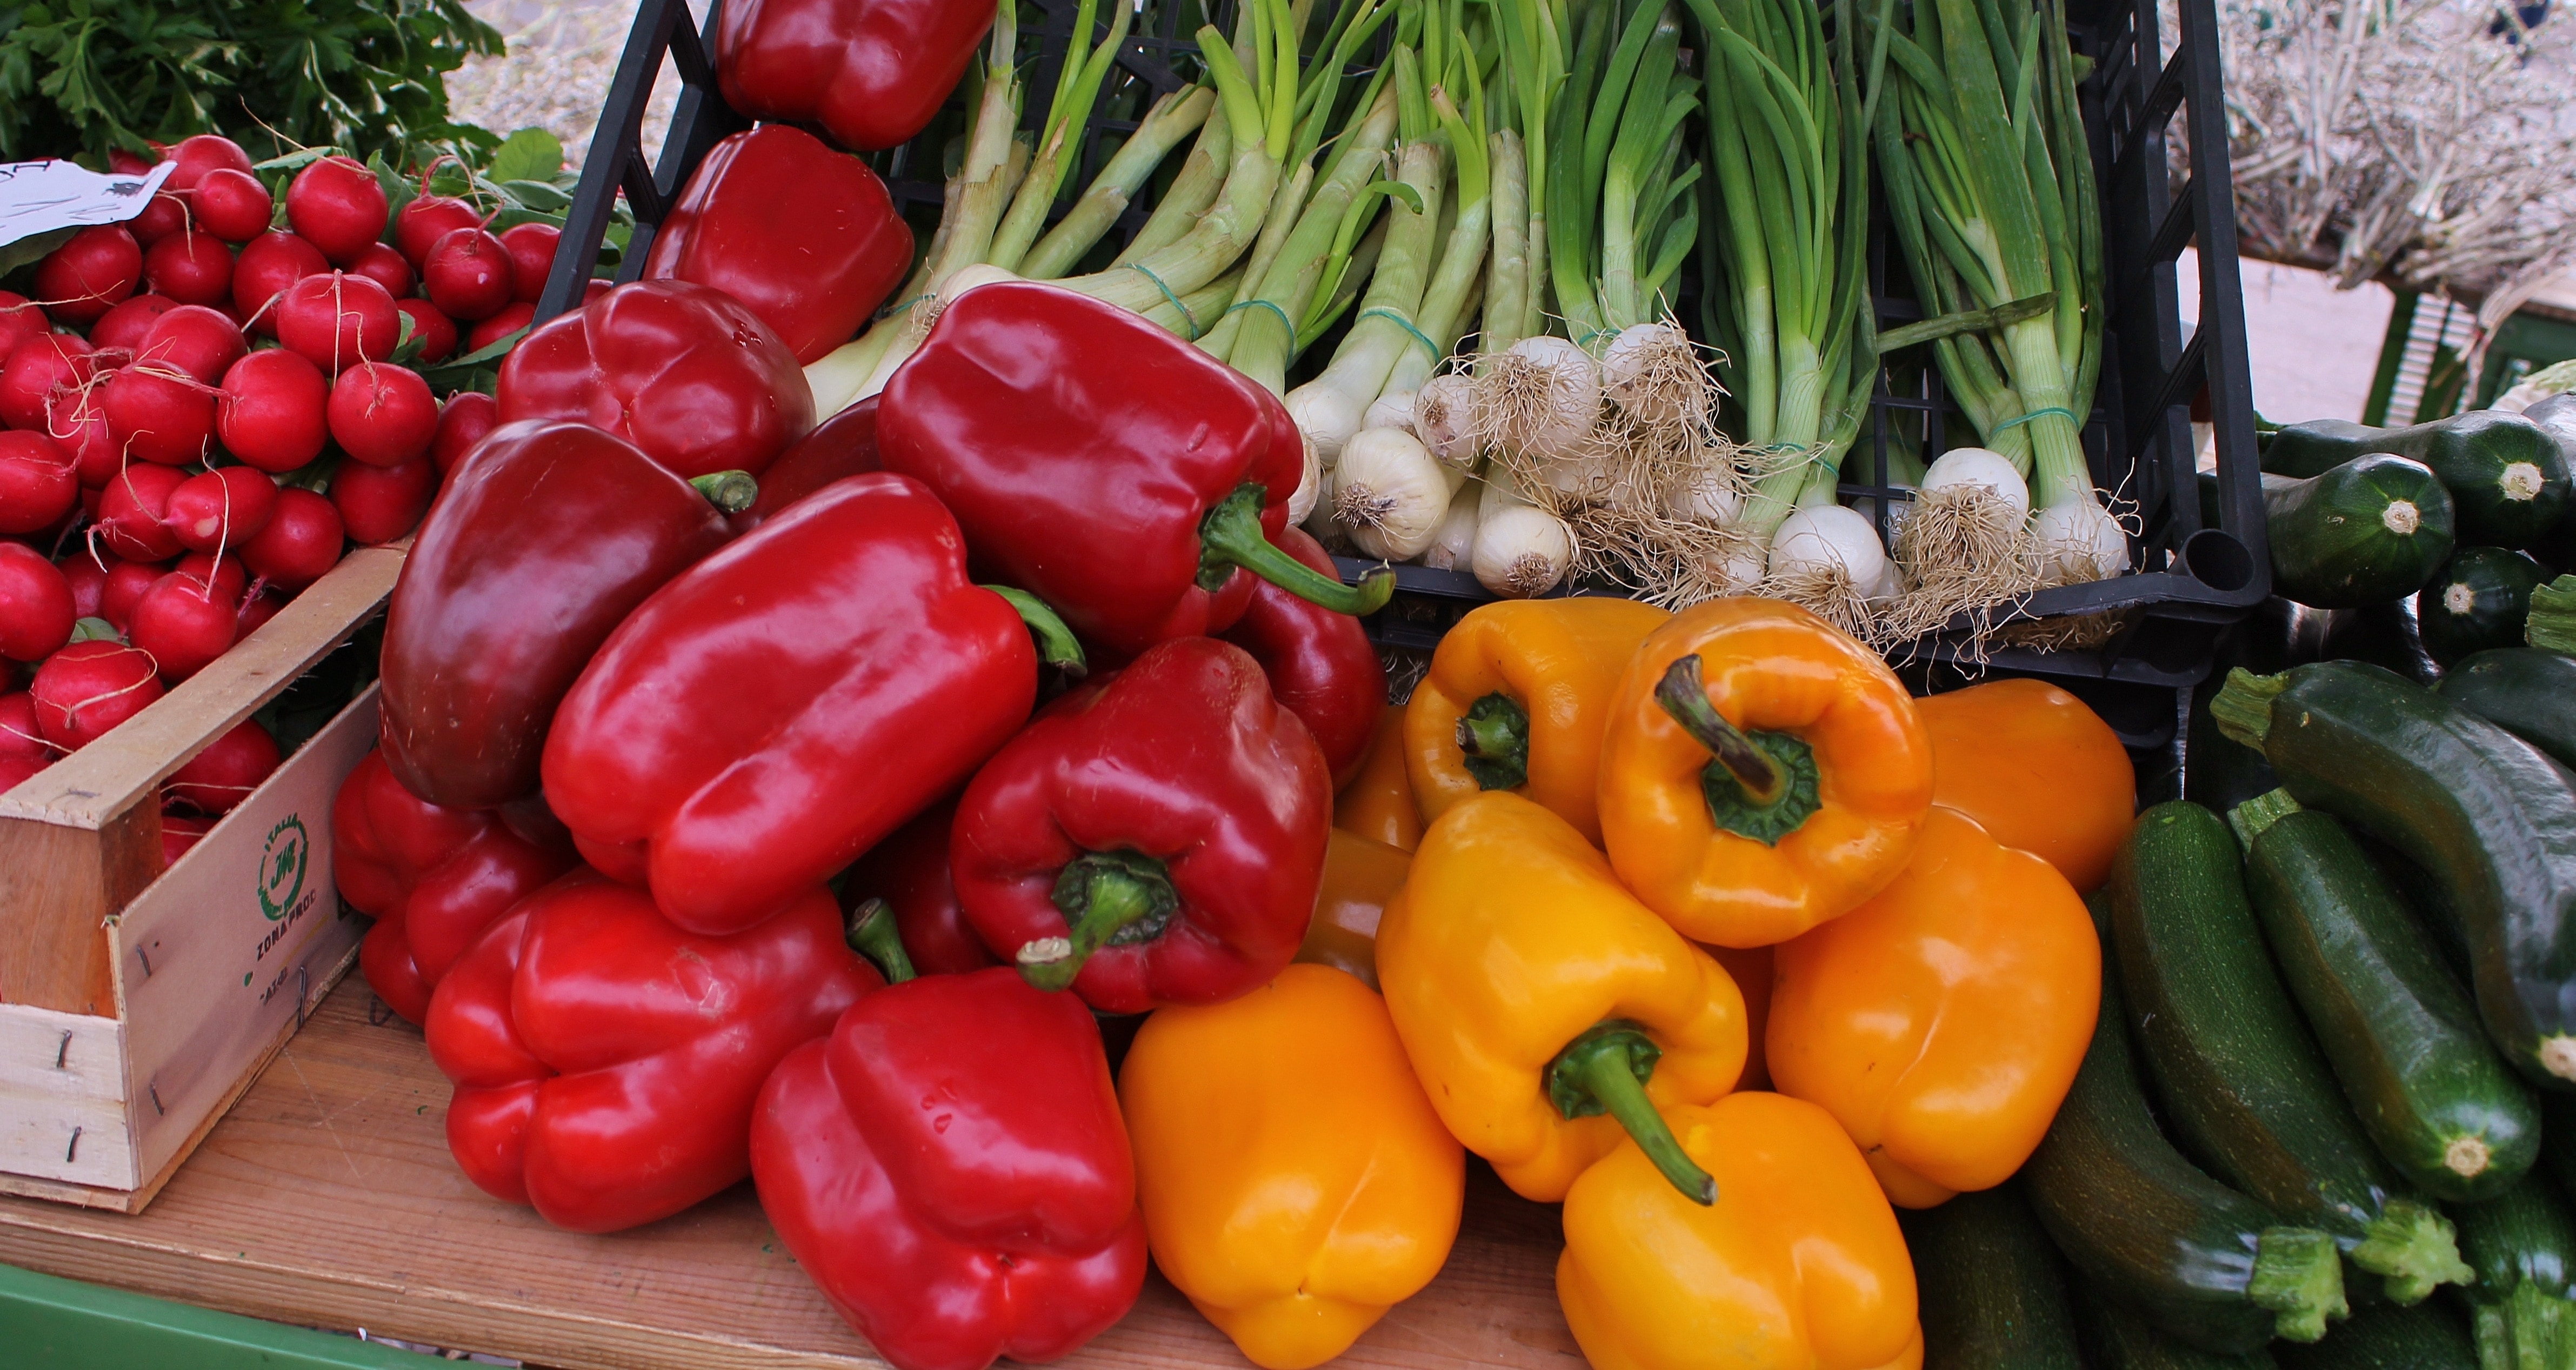 Paprika, Vegetables, Vitamins, vegetable, healthy eating